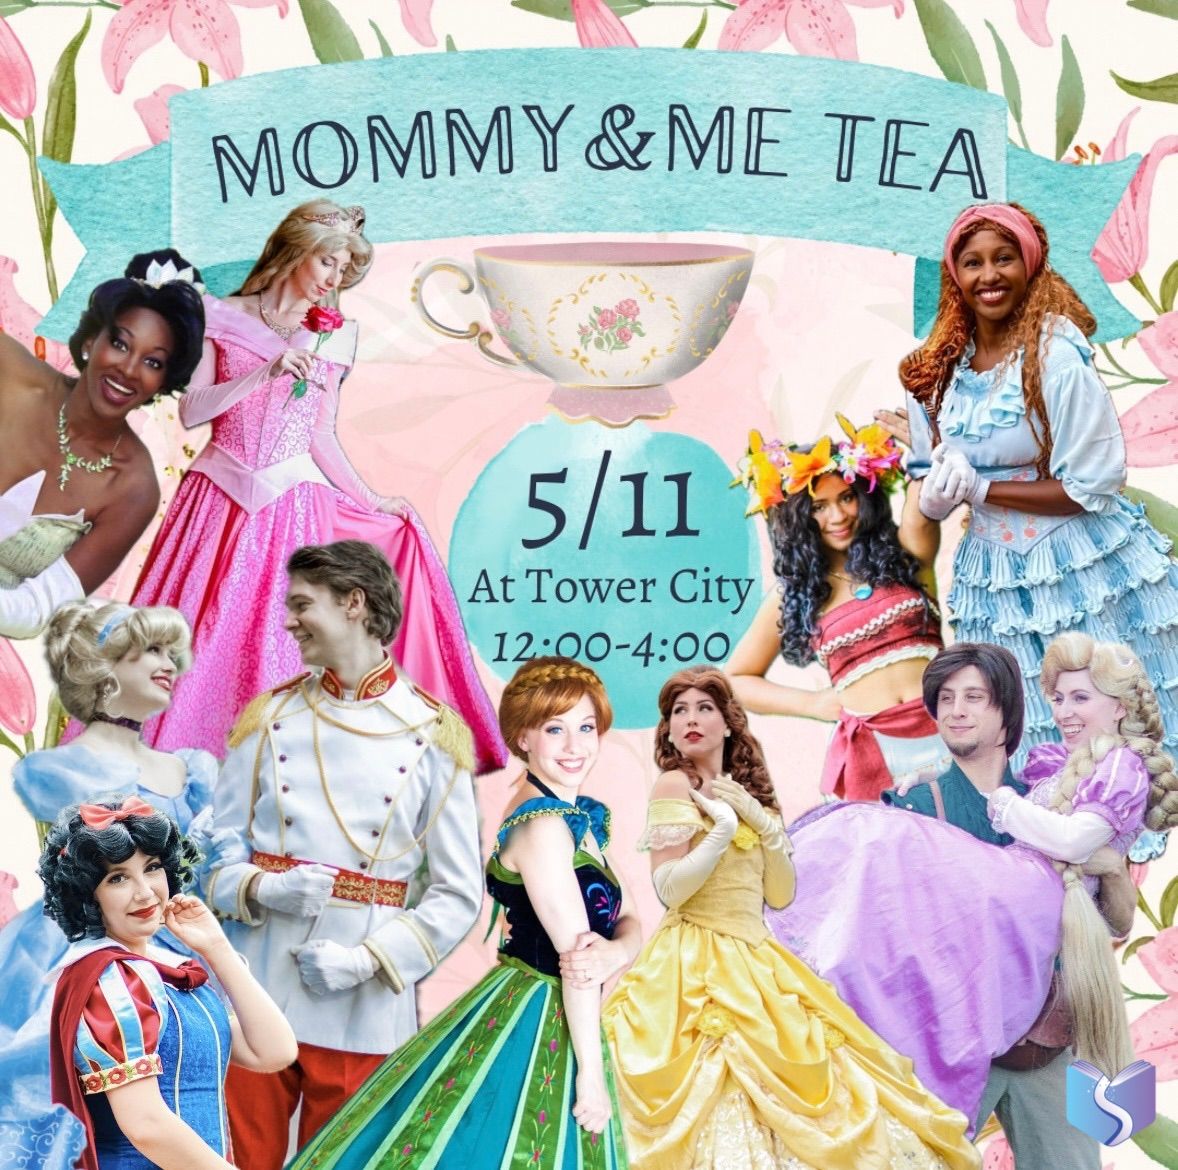 Mommy & Me Tea